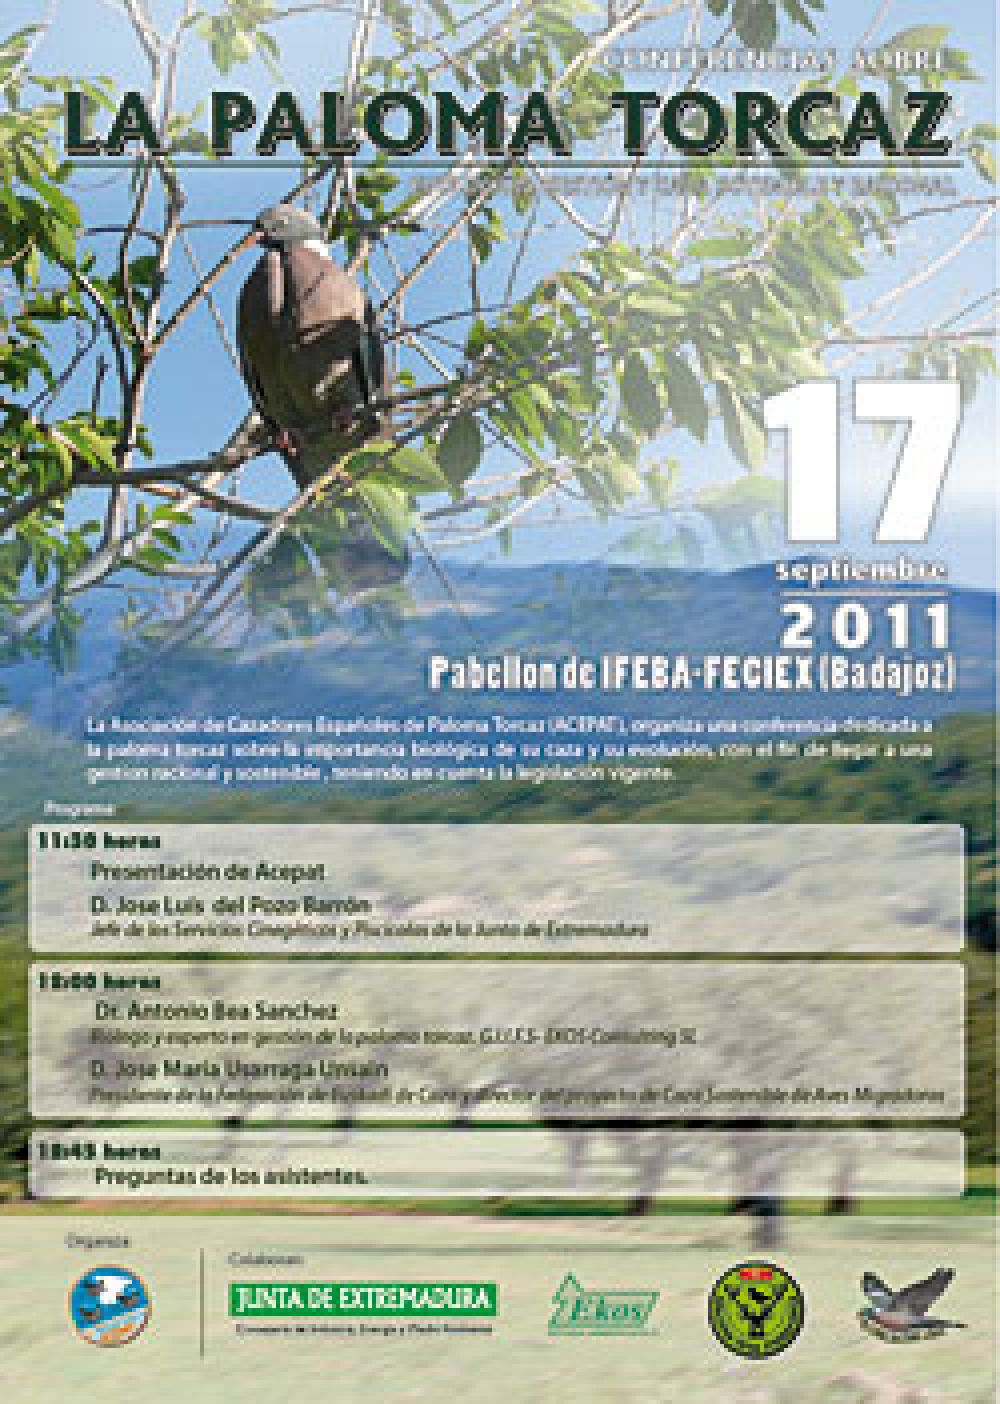 Conferencias sobre la paloma torcaz organizadas por ACEPAT